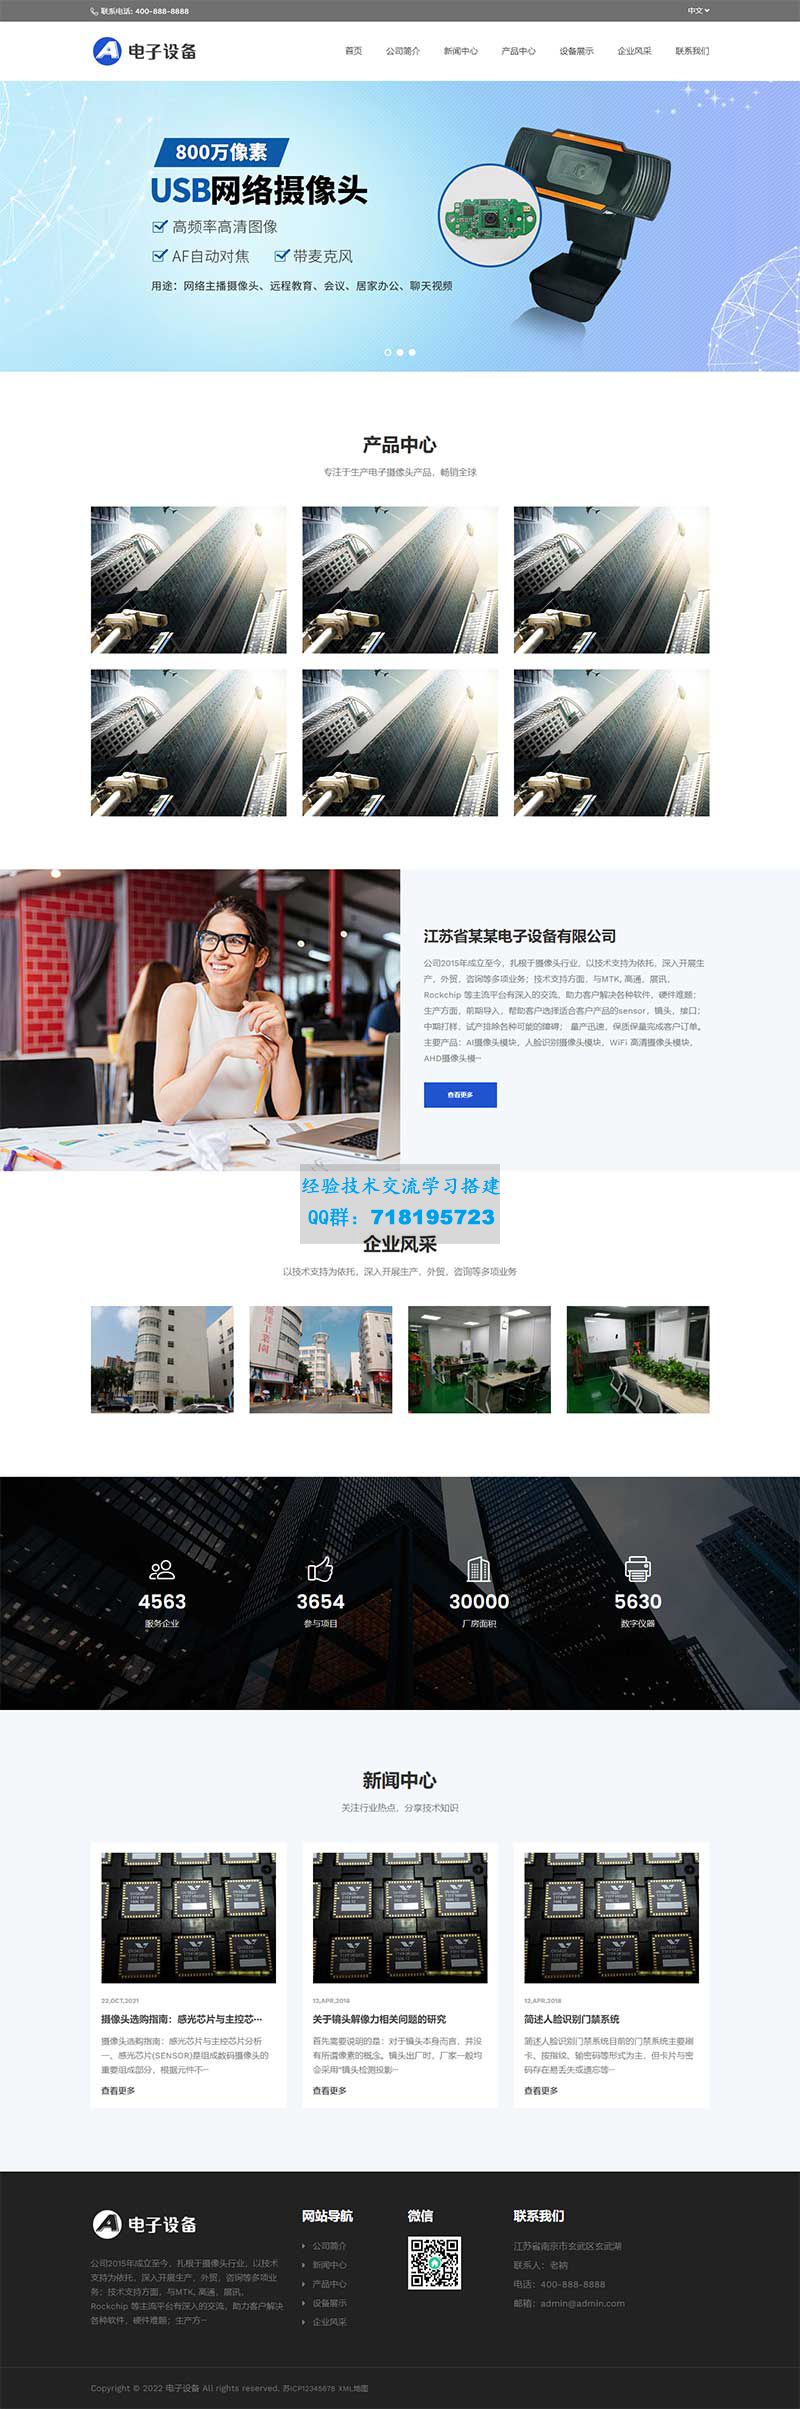     中英文双语电子摄像头设备网站源码 网络摄像头探头pbootcms网站模板
